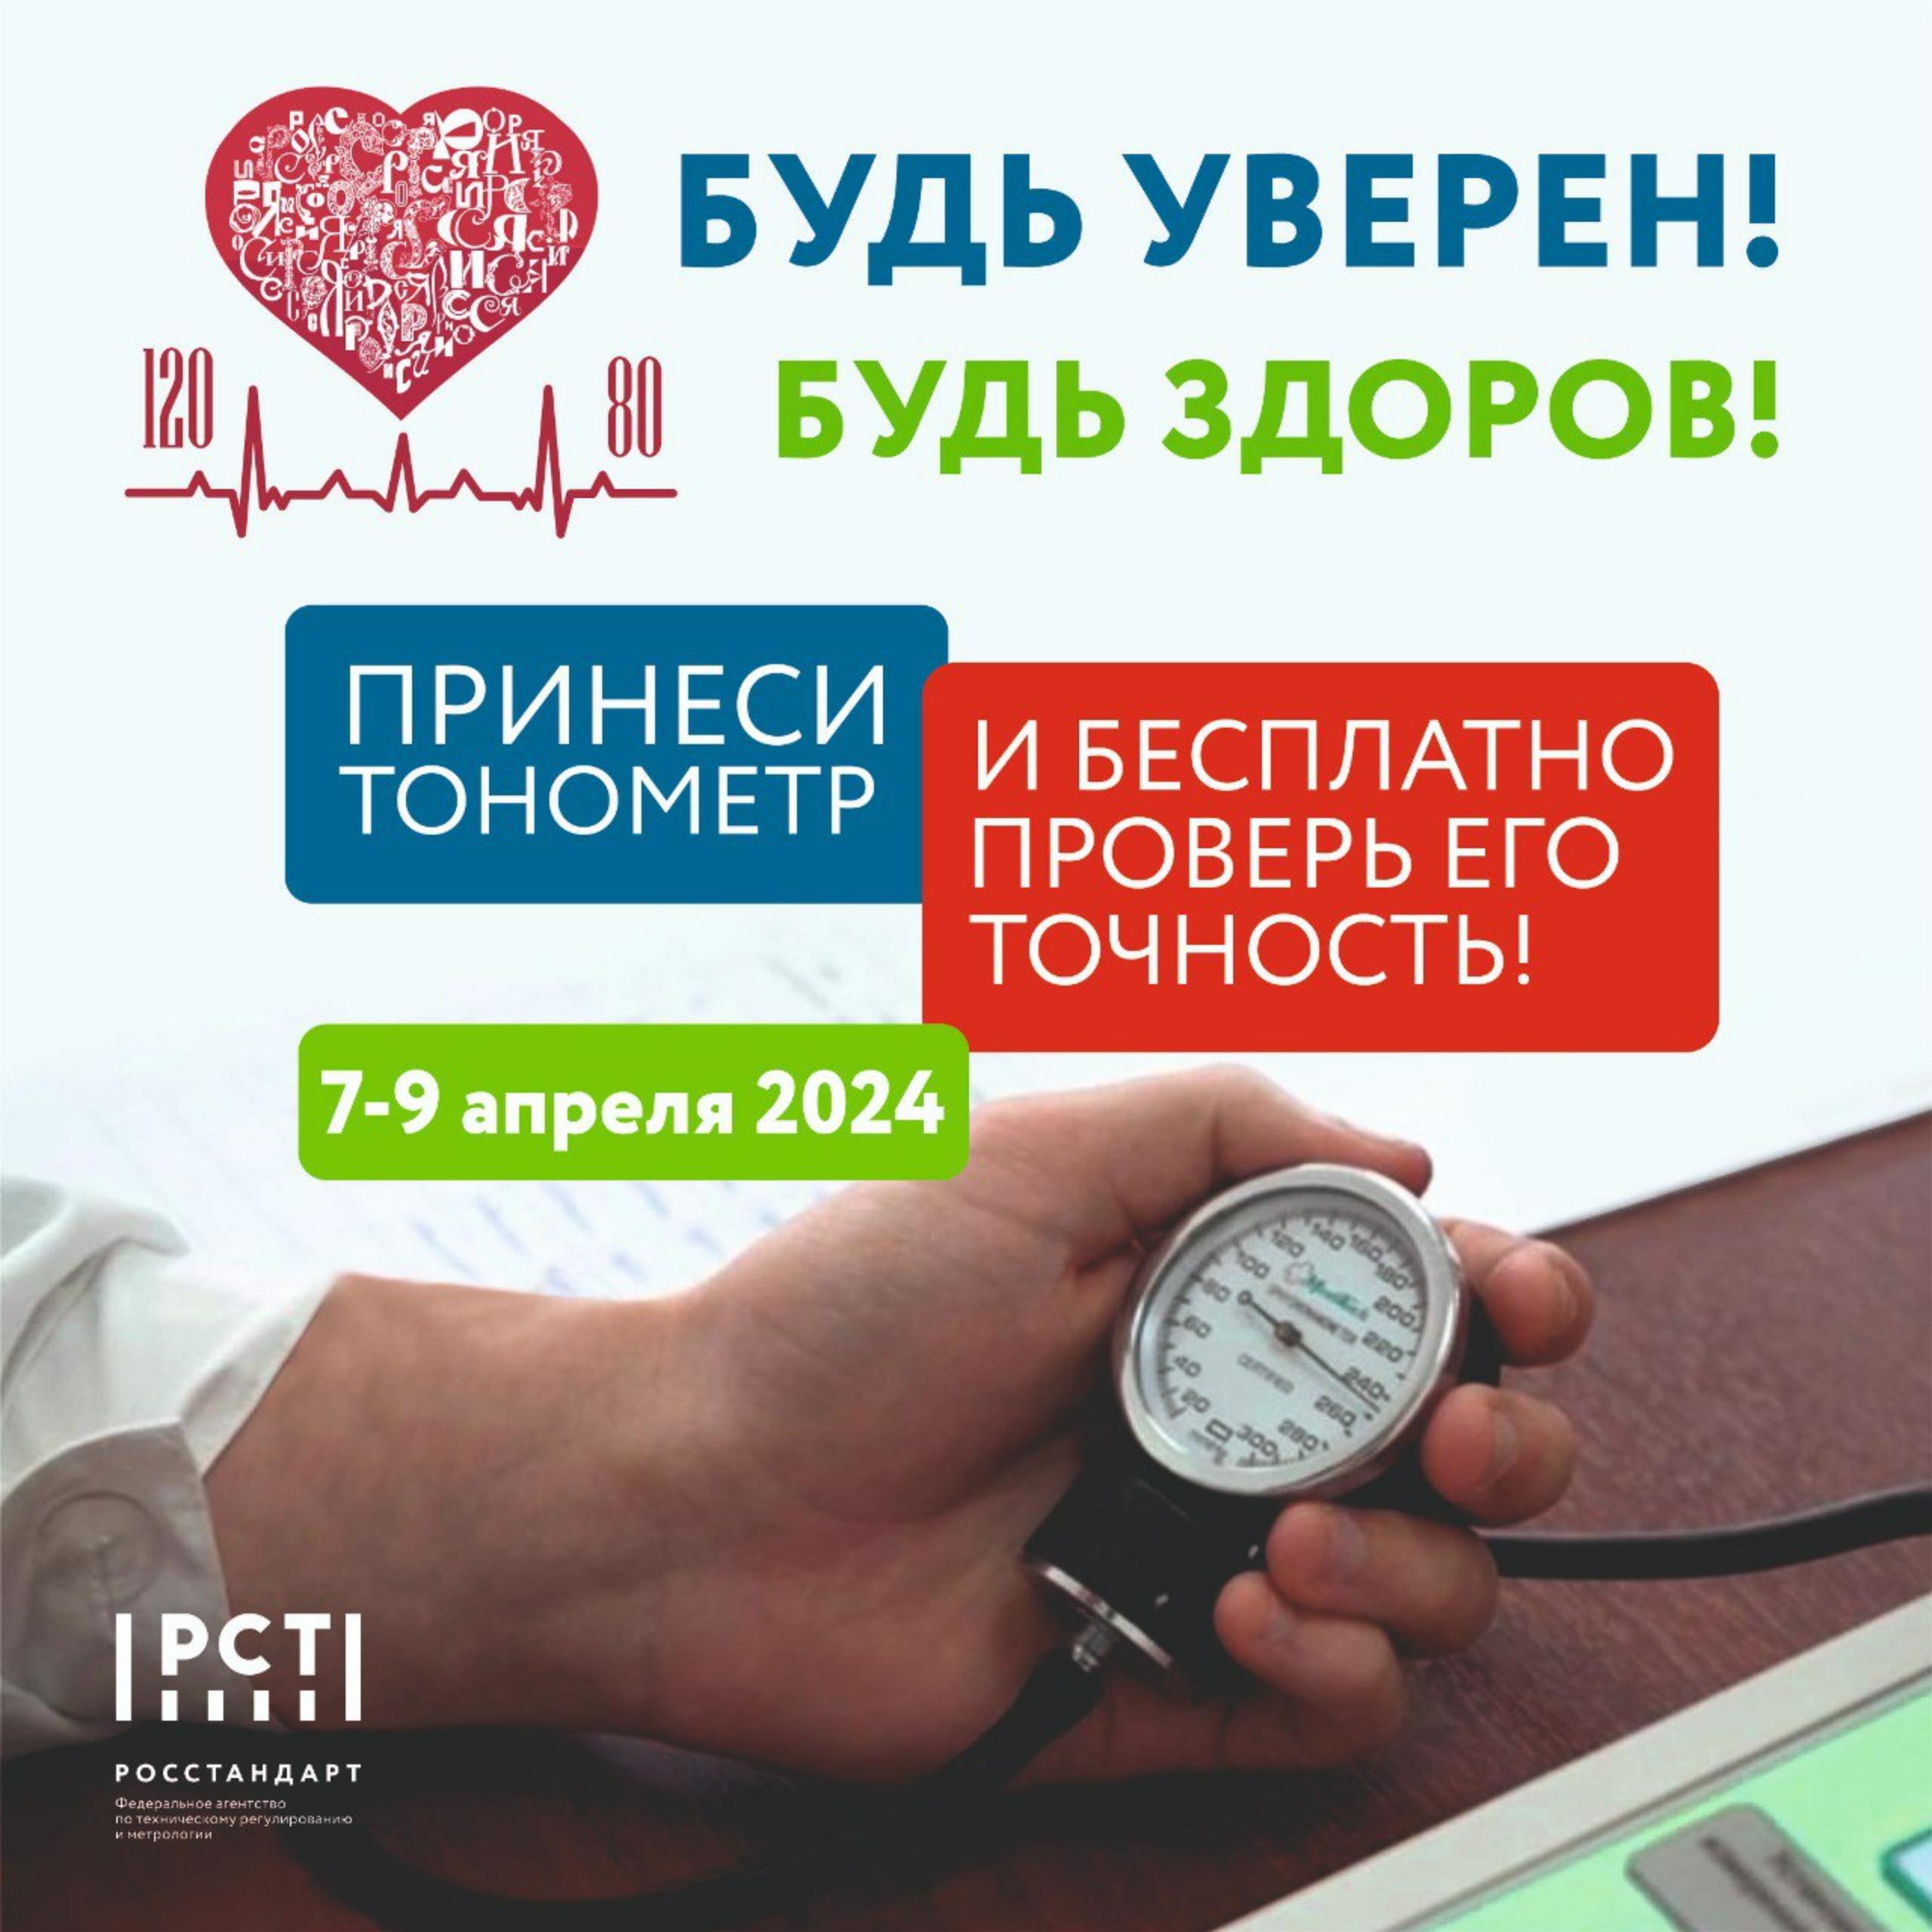 Жители Дзержинска смогут бесплатно проверить точность работы бытовых тонометров